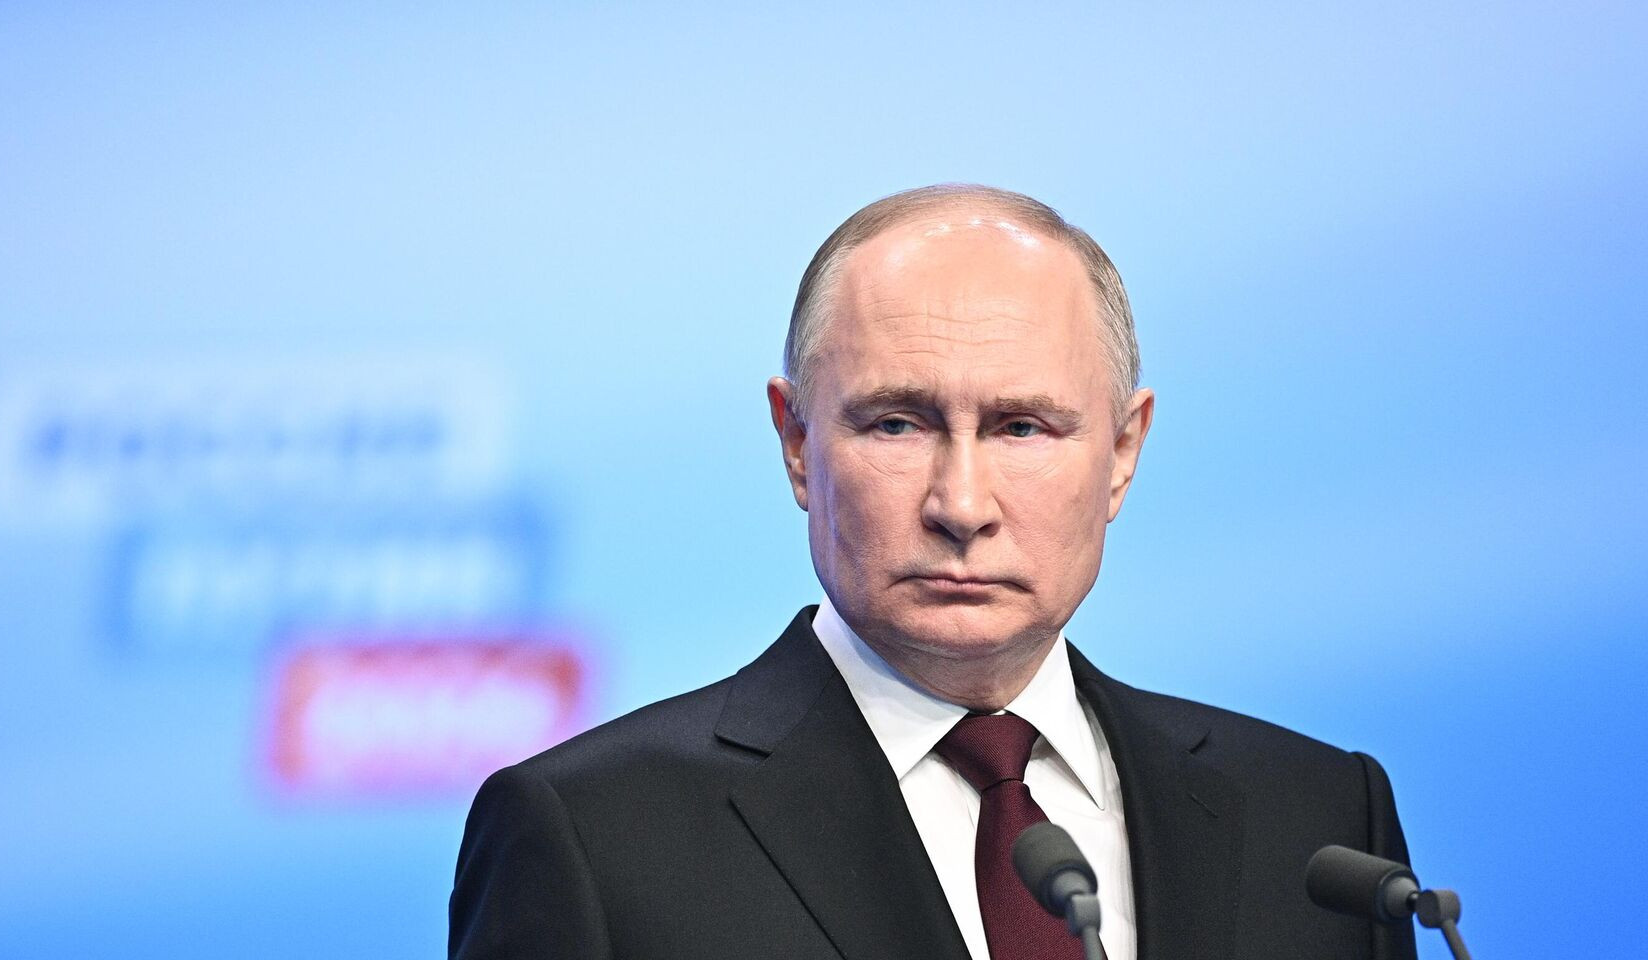 Yenidən seçildikdən sonra Putinin ilk xarici səfəri Çinə olacaq։ Reuters